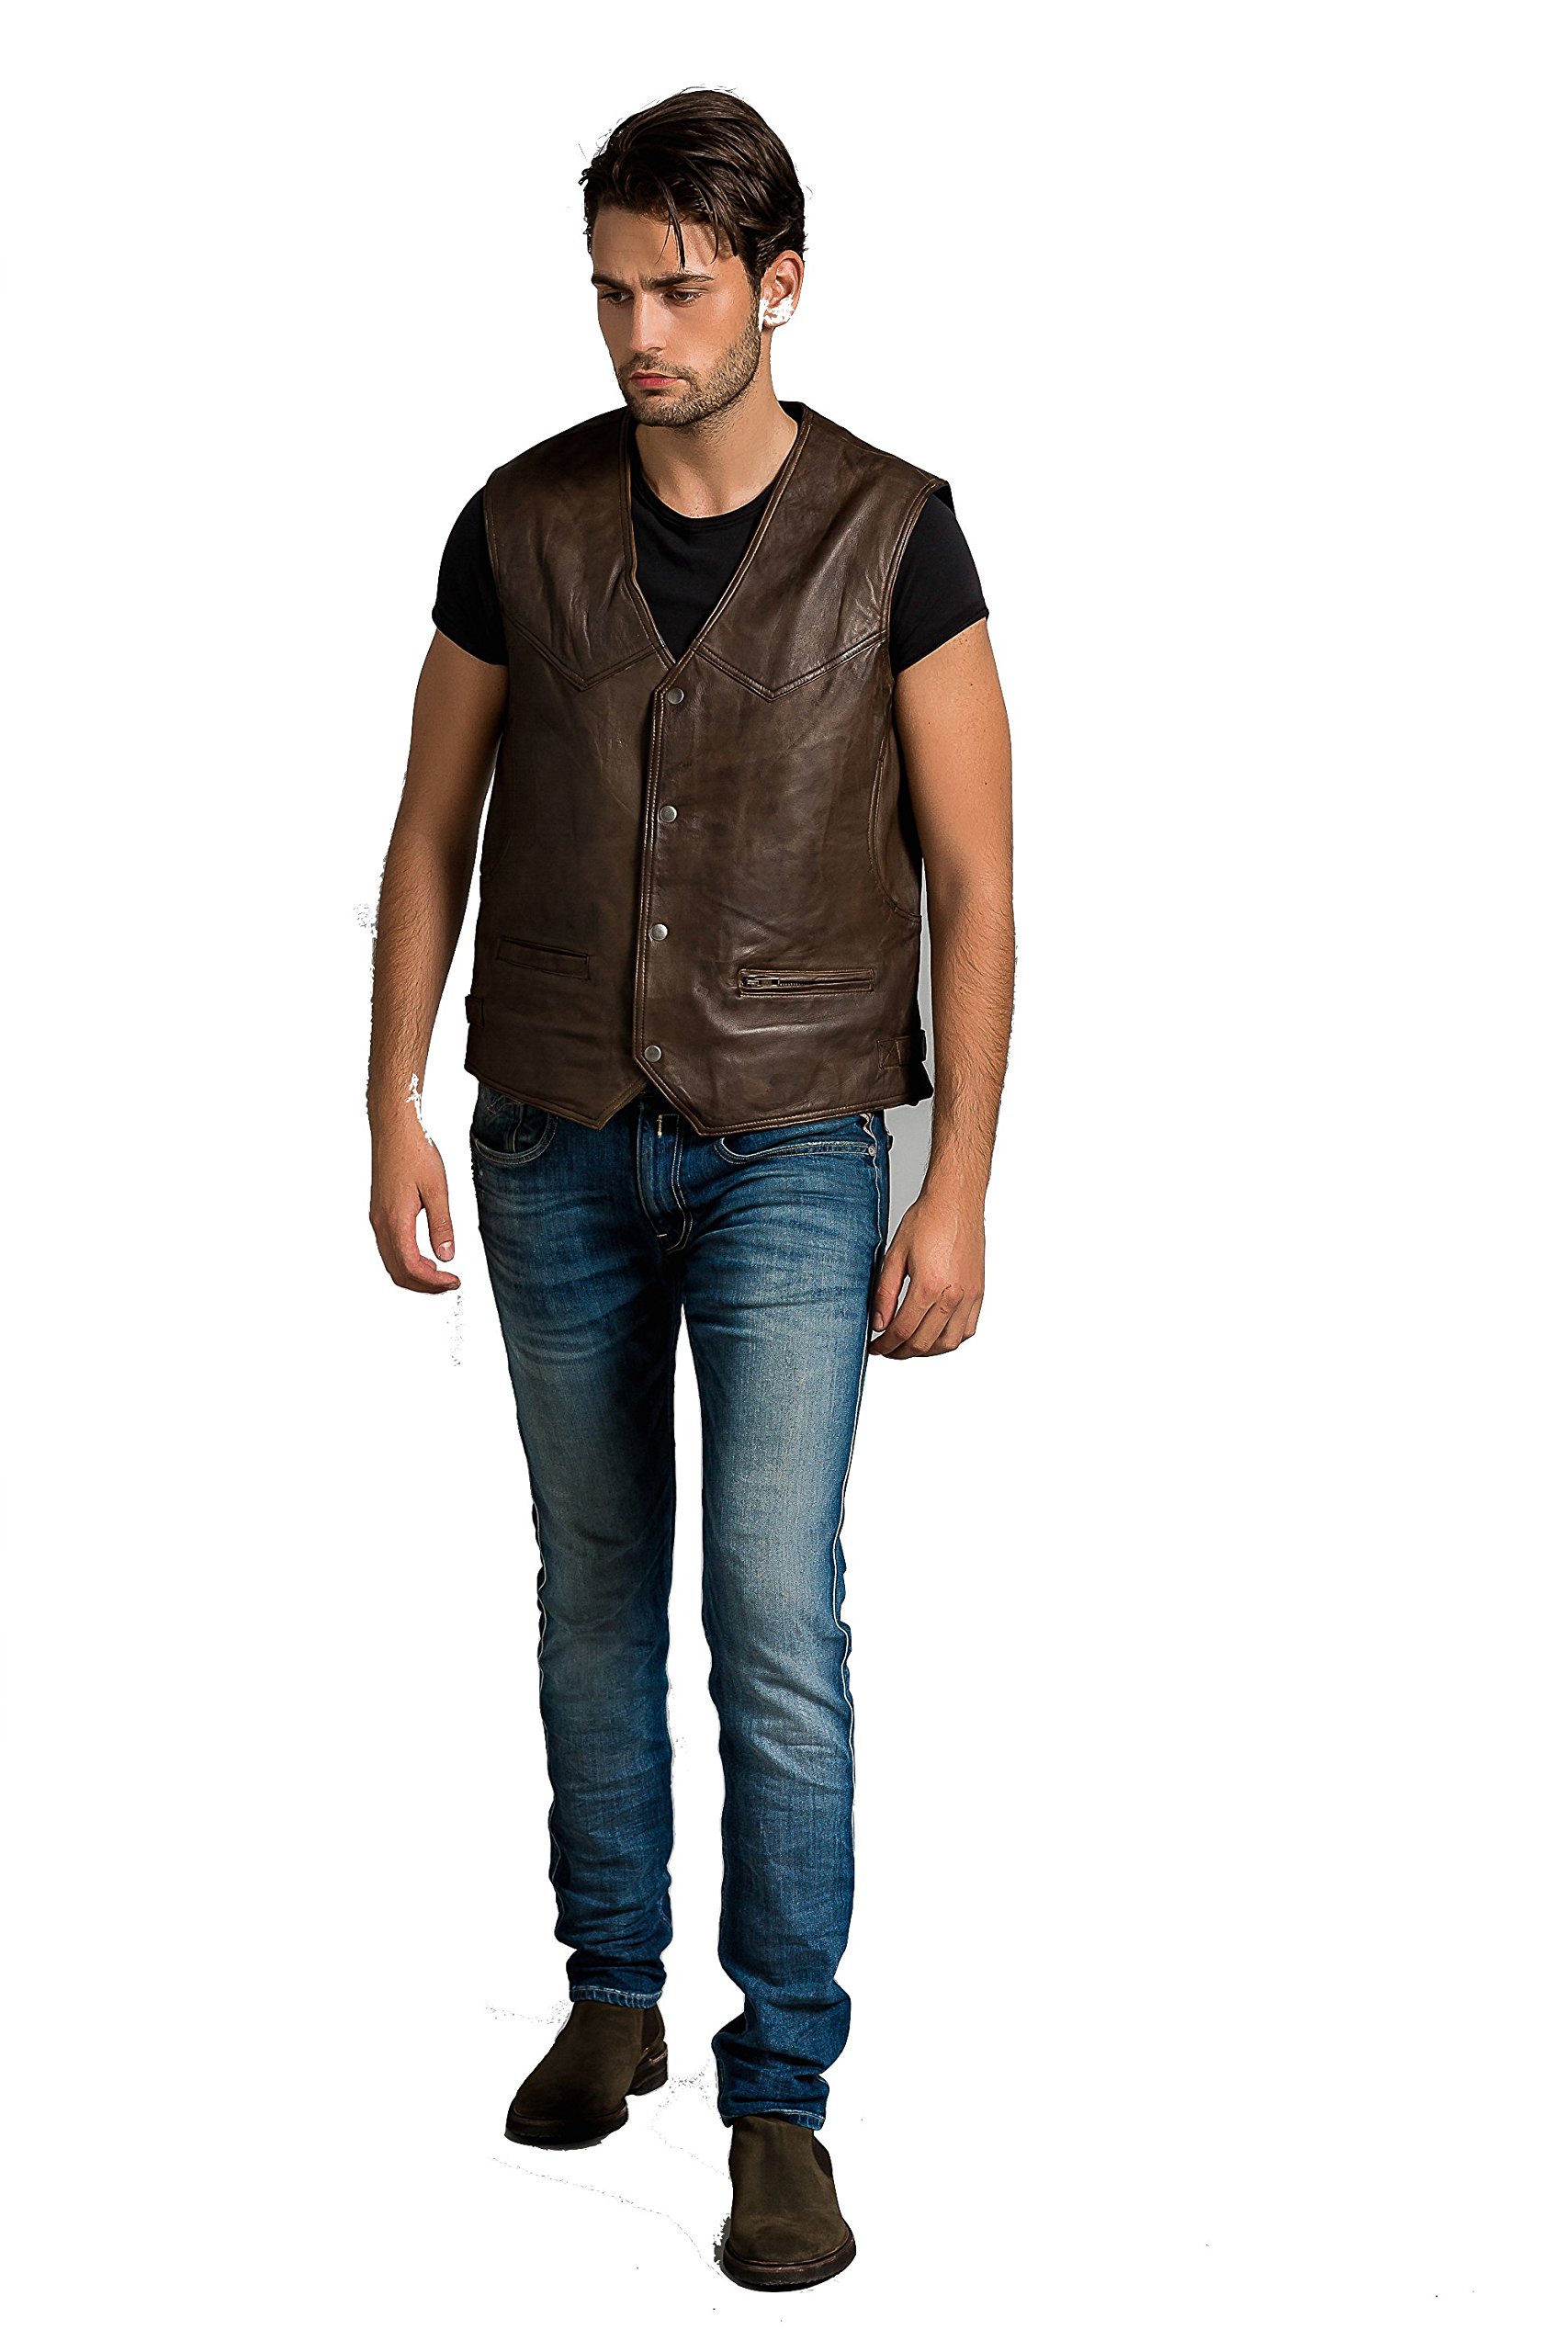 Billy Waistcoat, Ontorio Brown, Size XL von Urban Leather